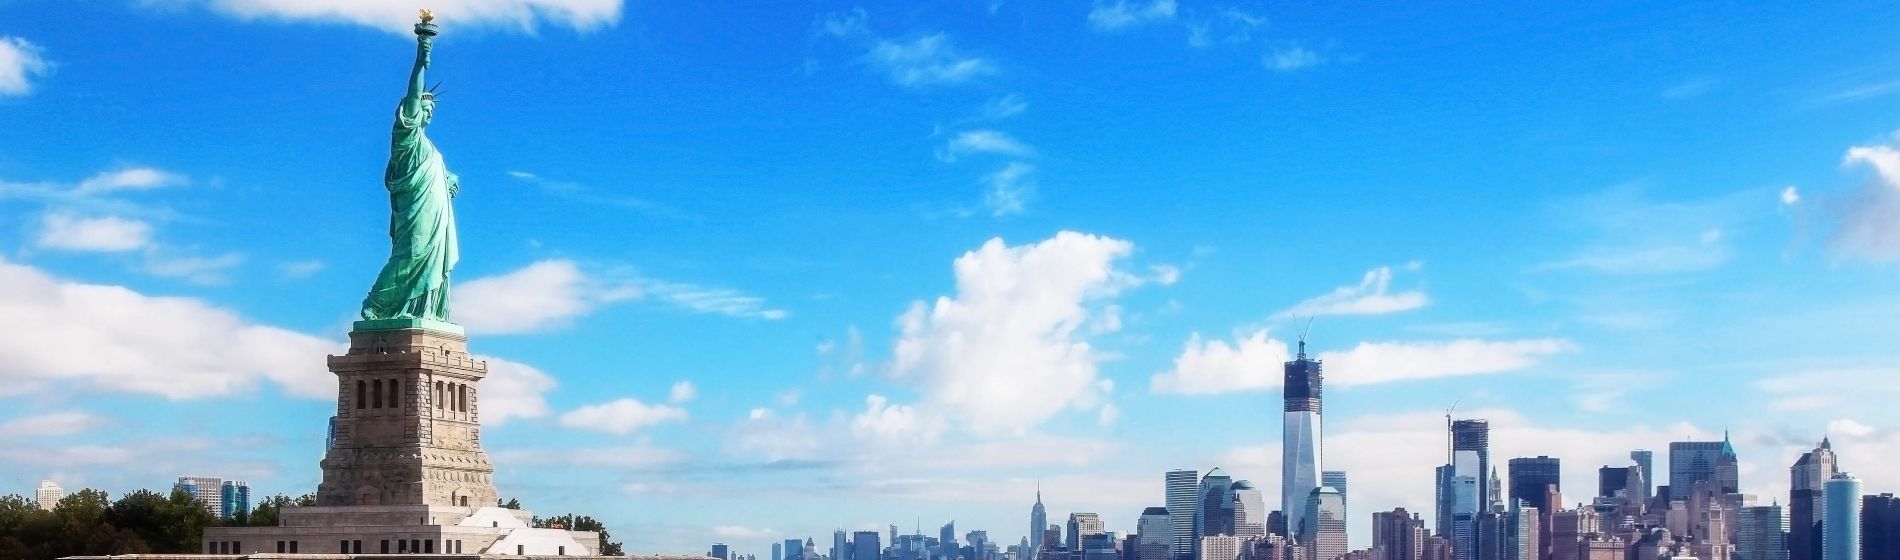 freiheitsstatue_und_die_skyline_von_manhattan_new_york_city.jpg